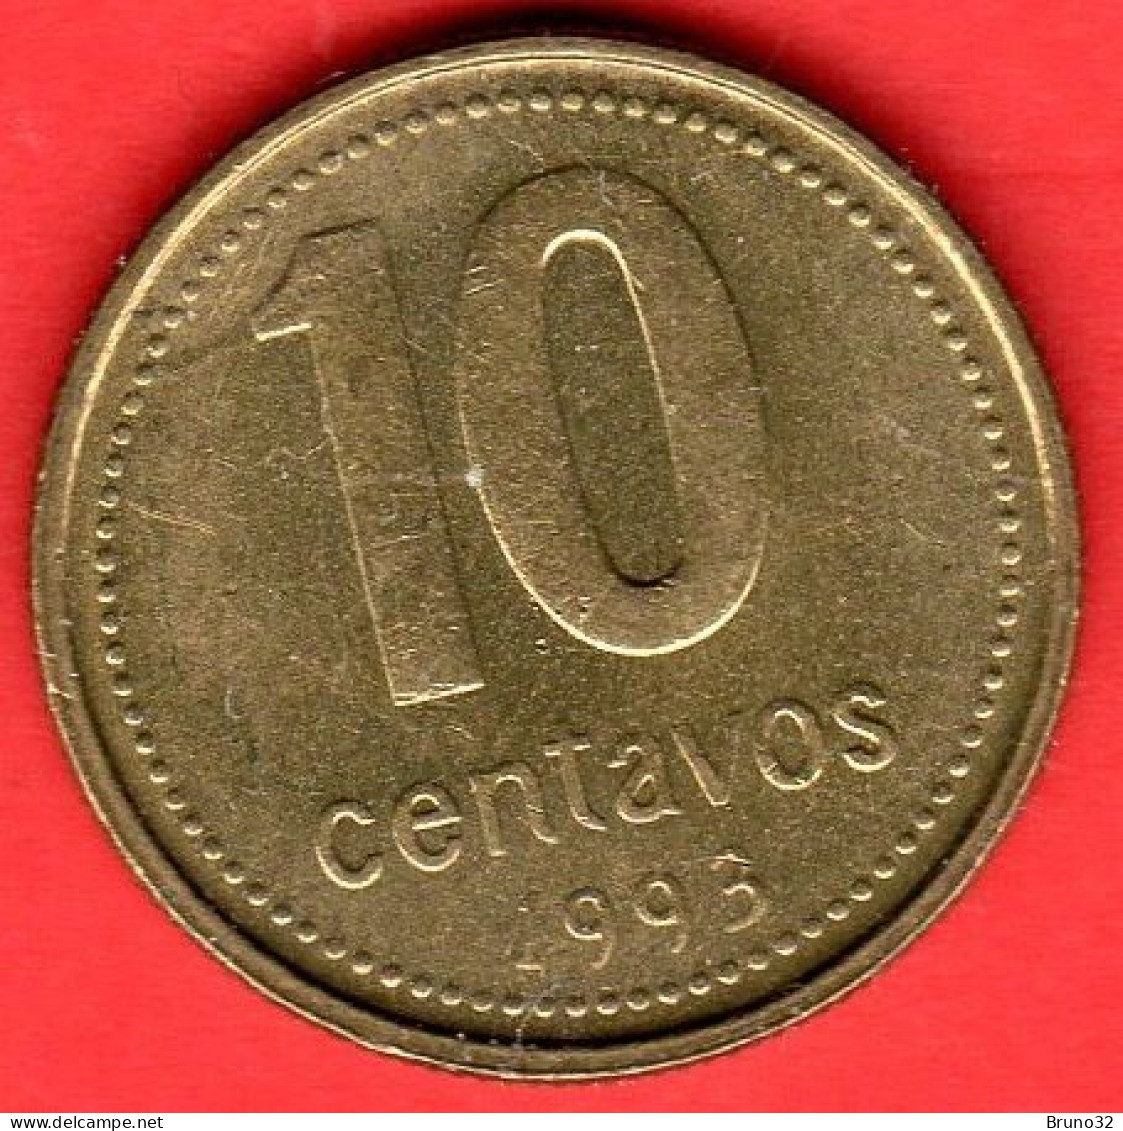 ARGENTINA - 1993 - 10 Centavos - QFDC/aUNC - Come Da Foto - Argentina